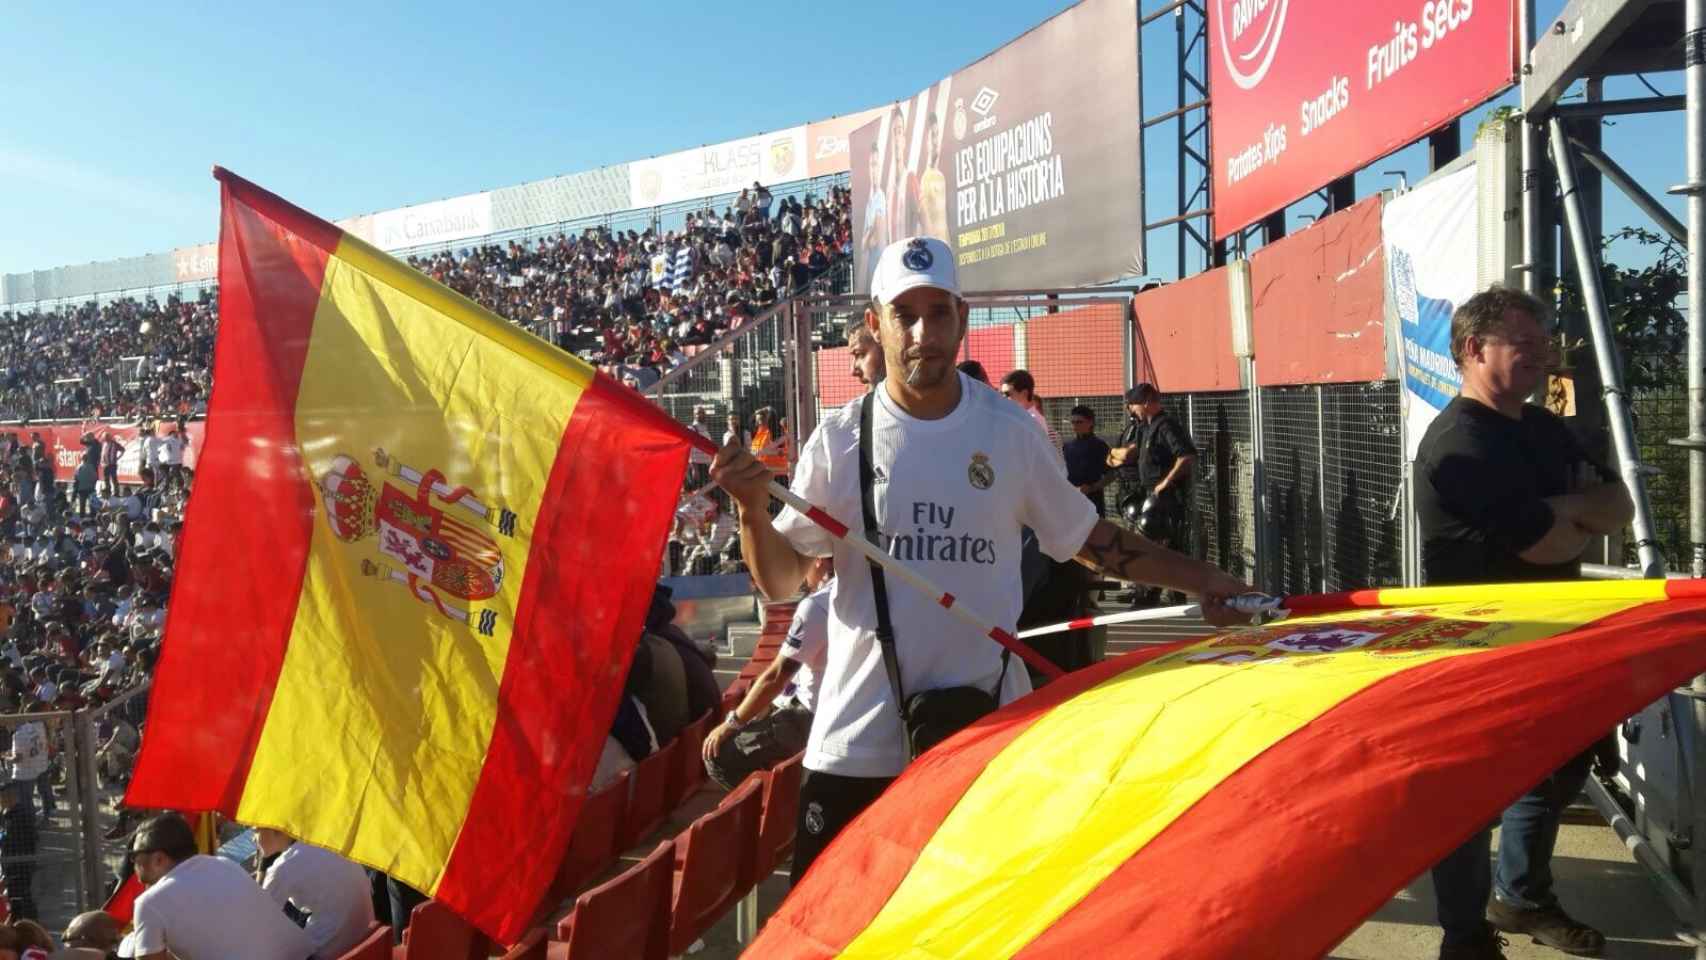 Santi asistió al partido entre el Girona y el Real Madrid de este domingo con dos banderas de España.